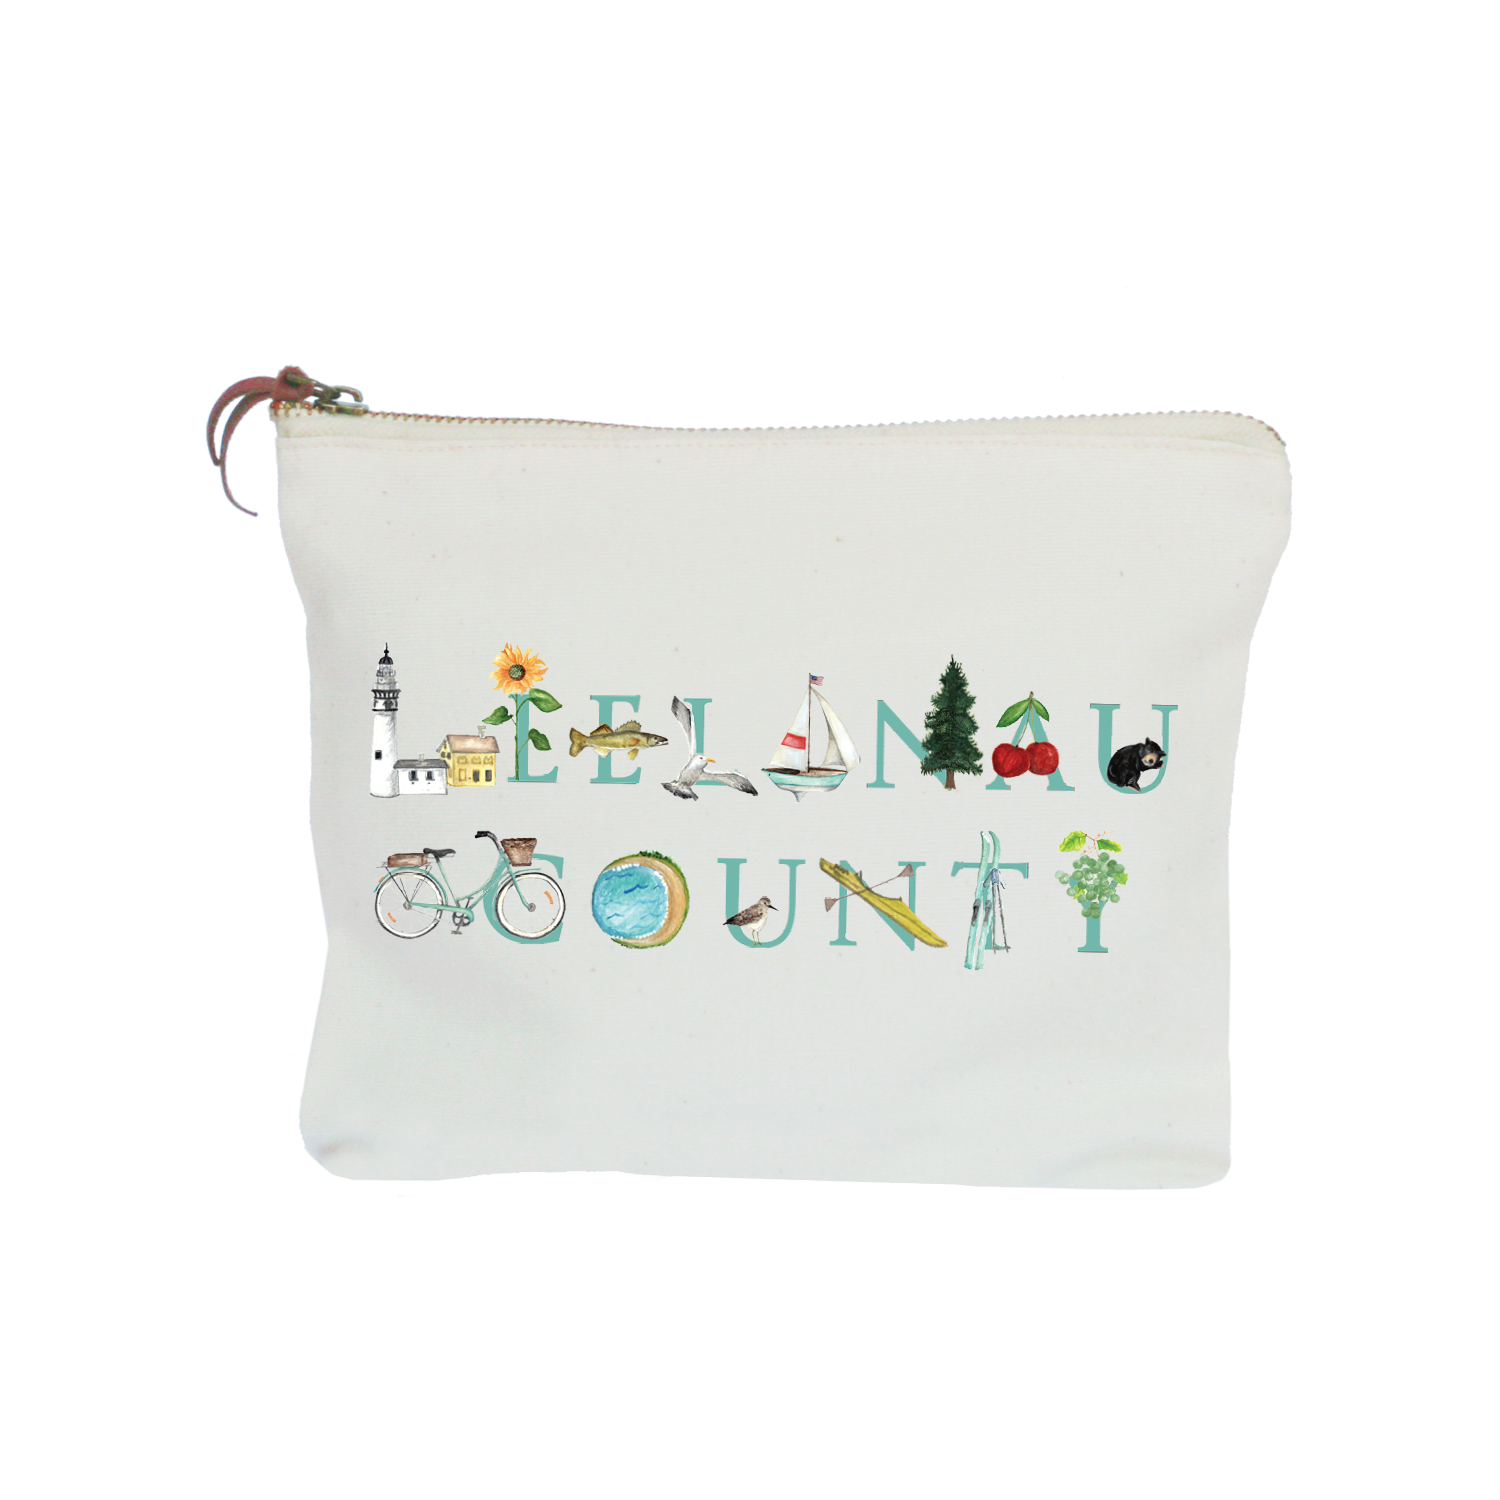 Leelanau County zipper pouch